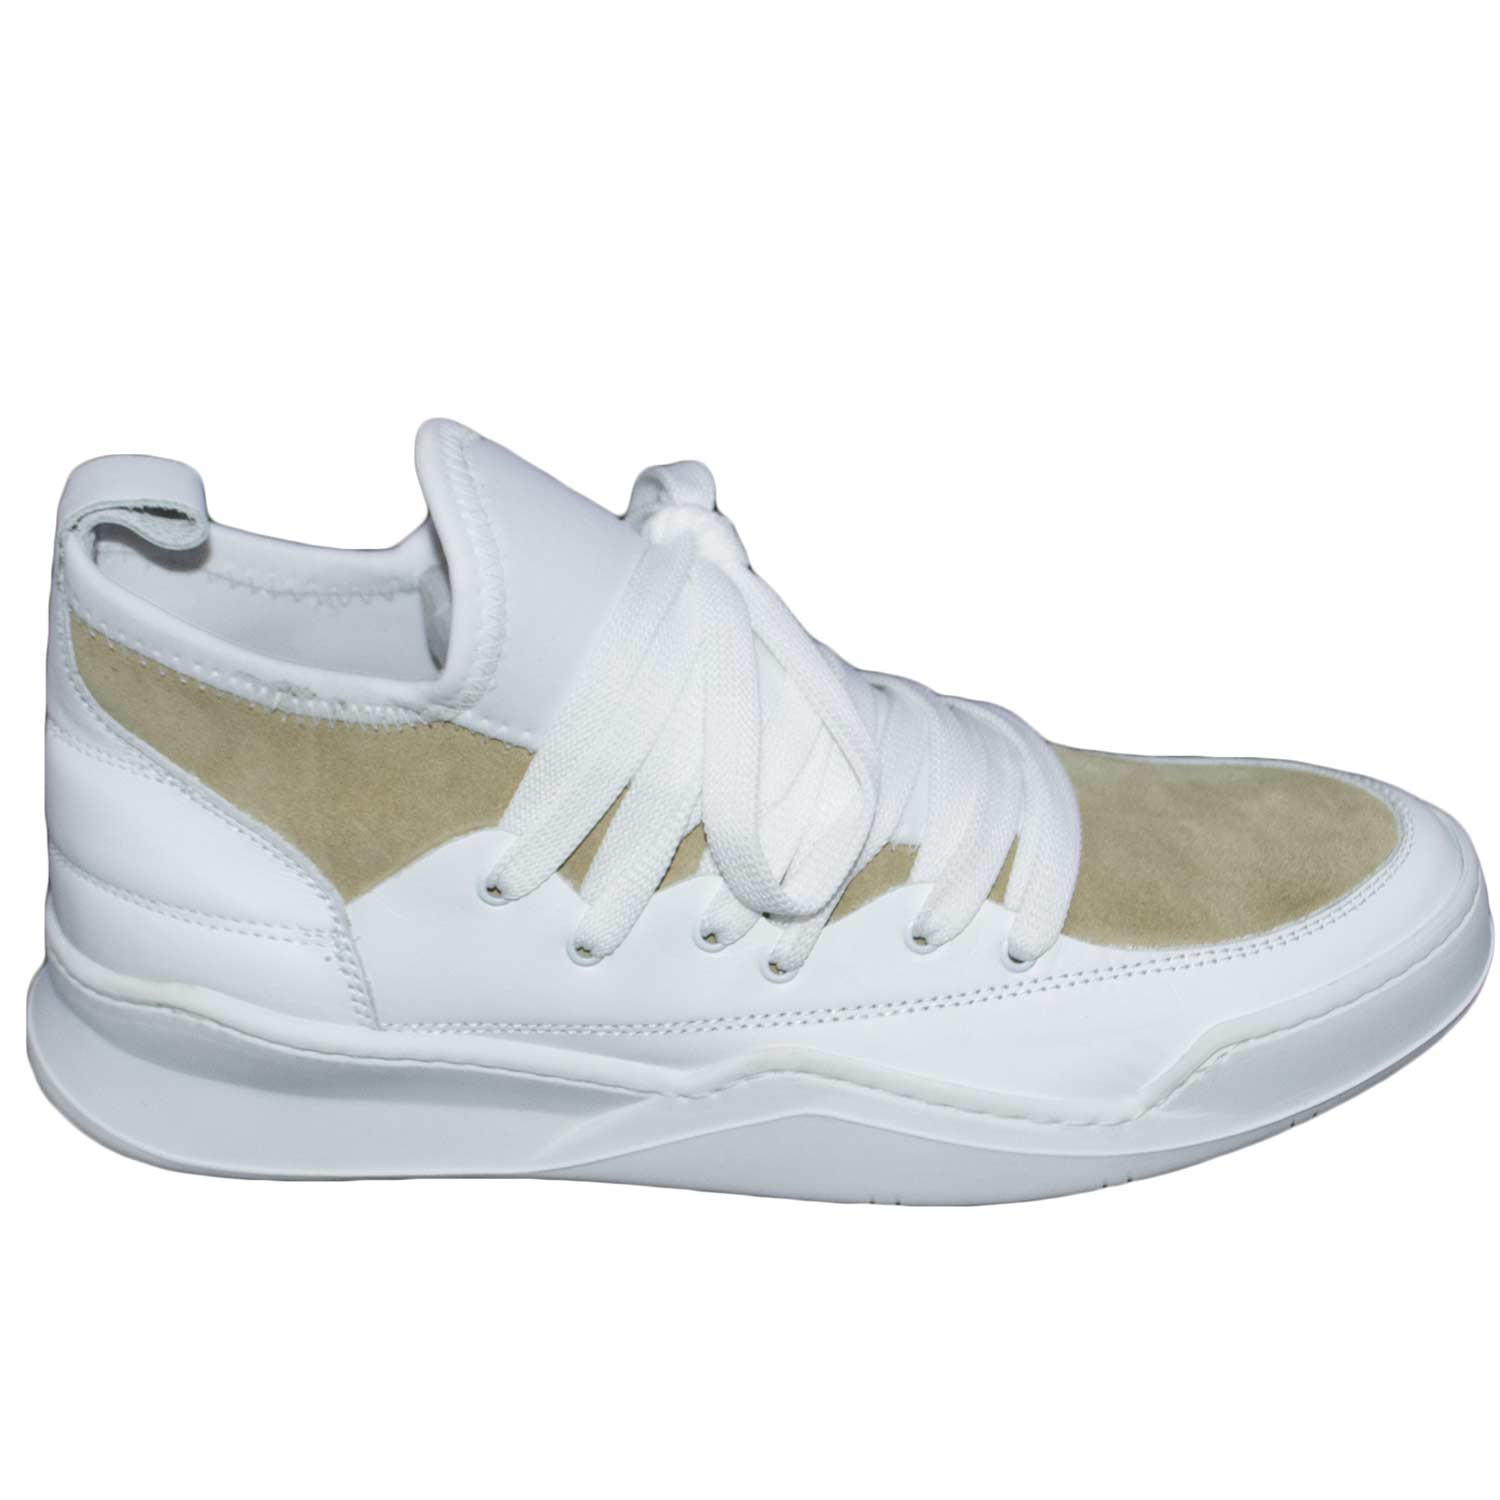 Sneakers bassa made in italy art marcelo bicolore beige e bianco az0120 vera pelle fondo bianco curvo.